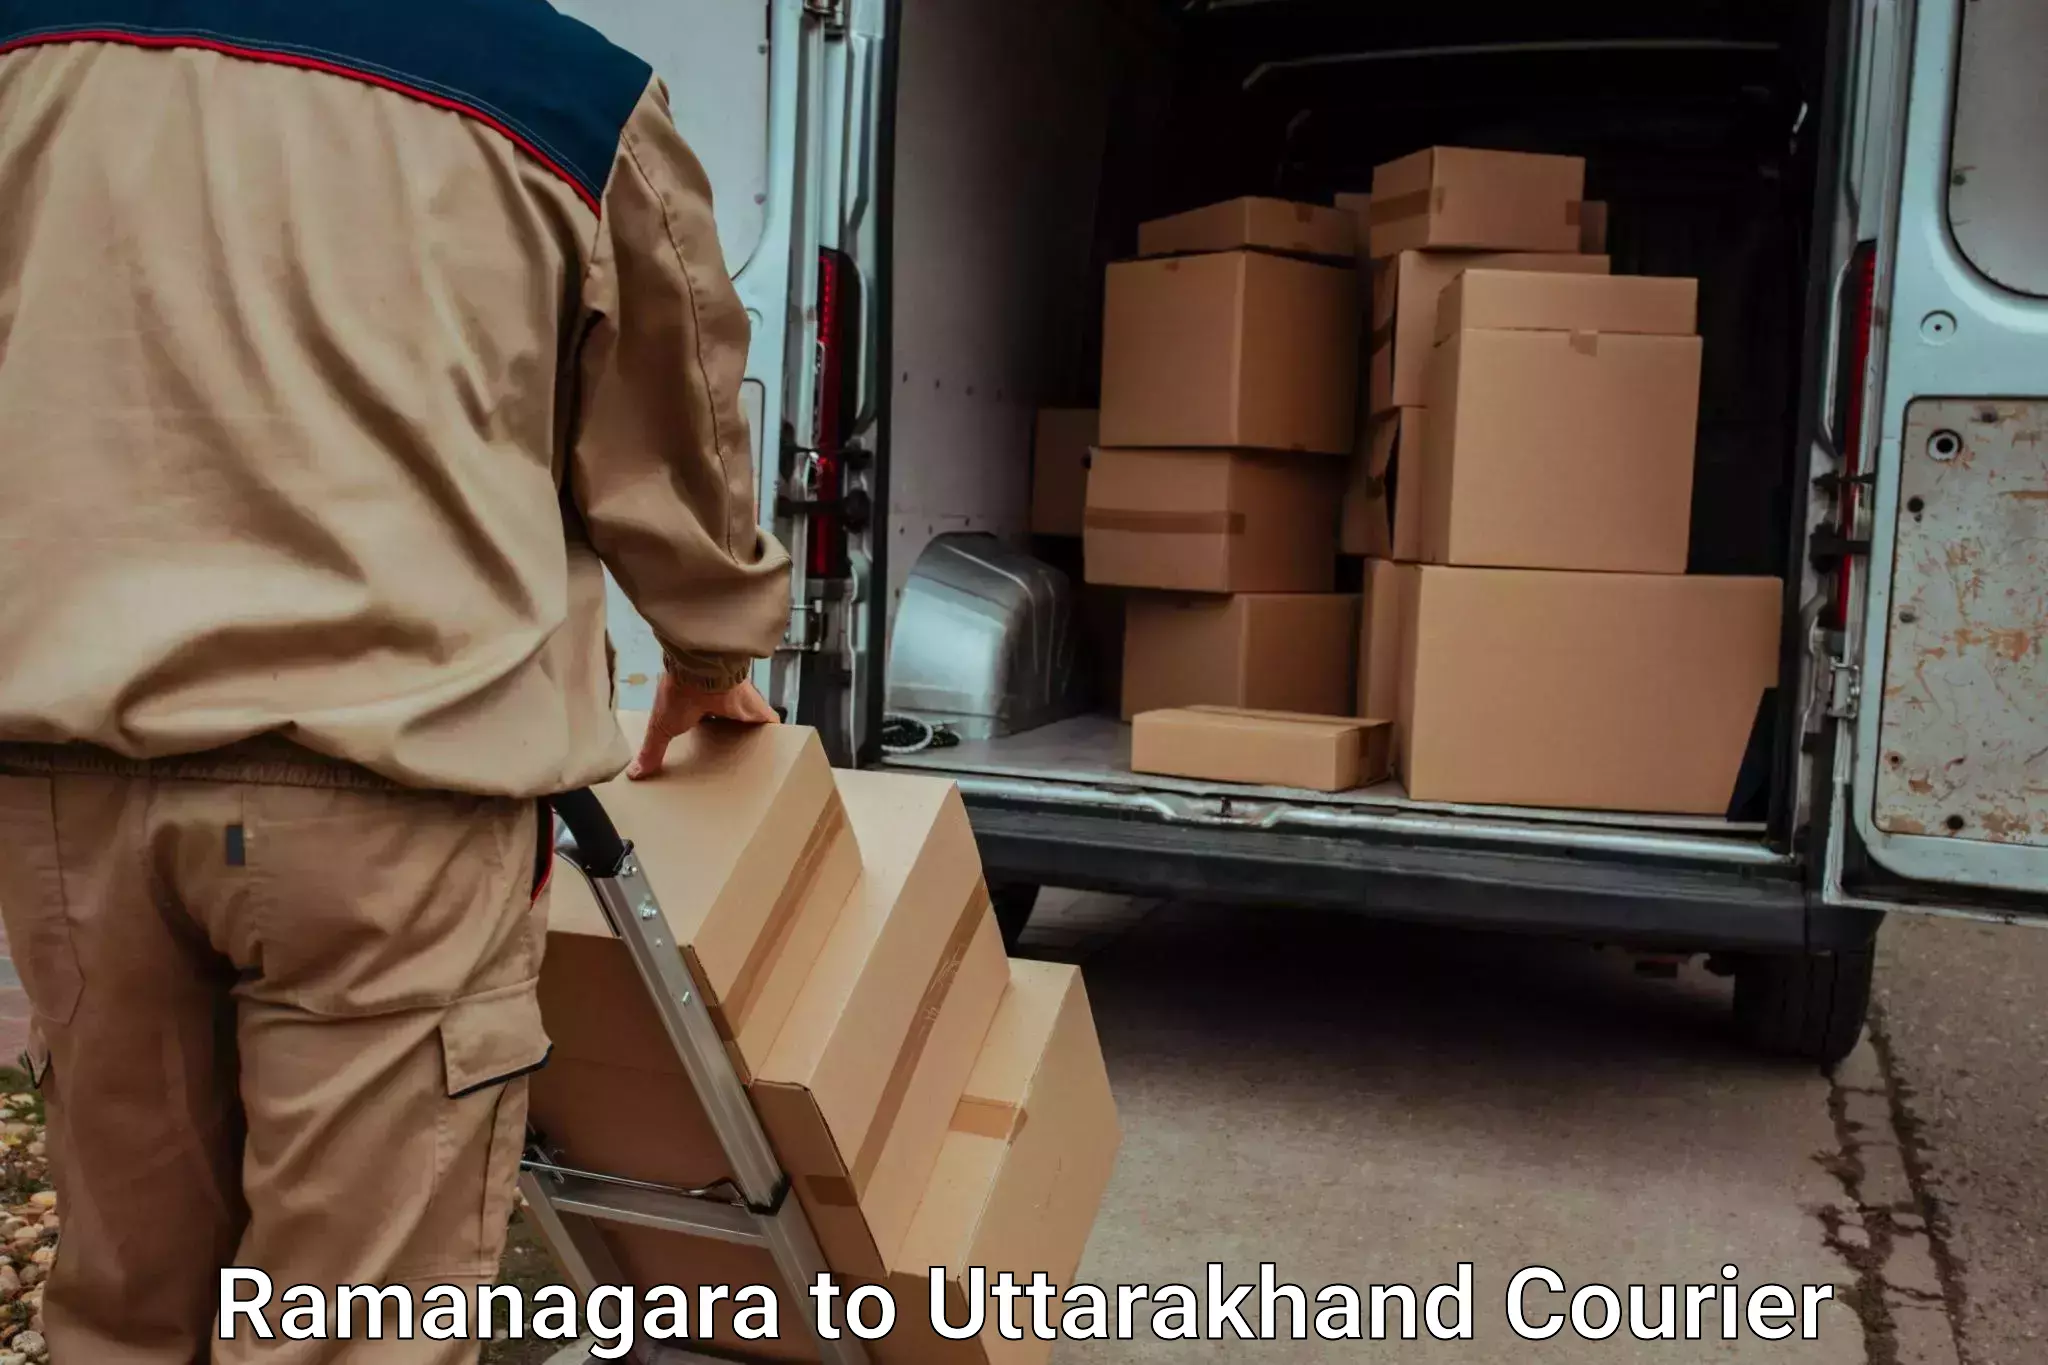 Furniture transport professionals Ramanagara to Someshwar